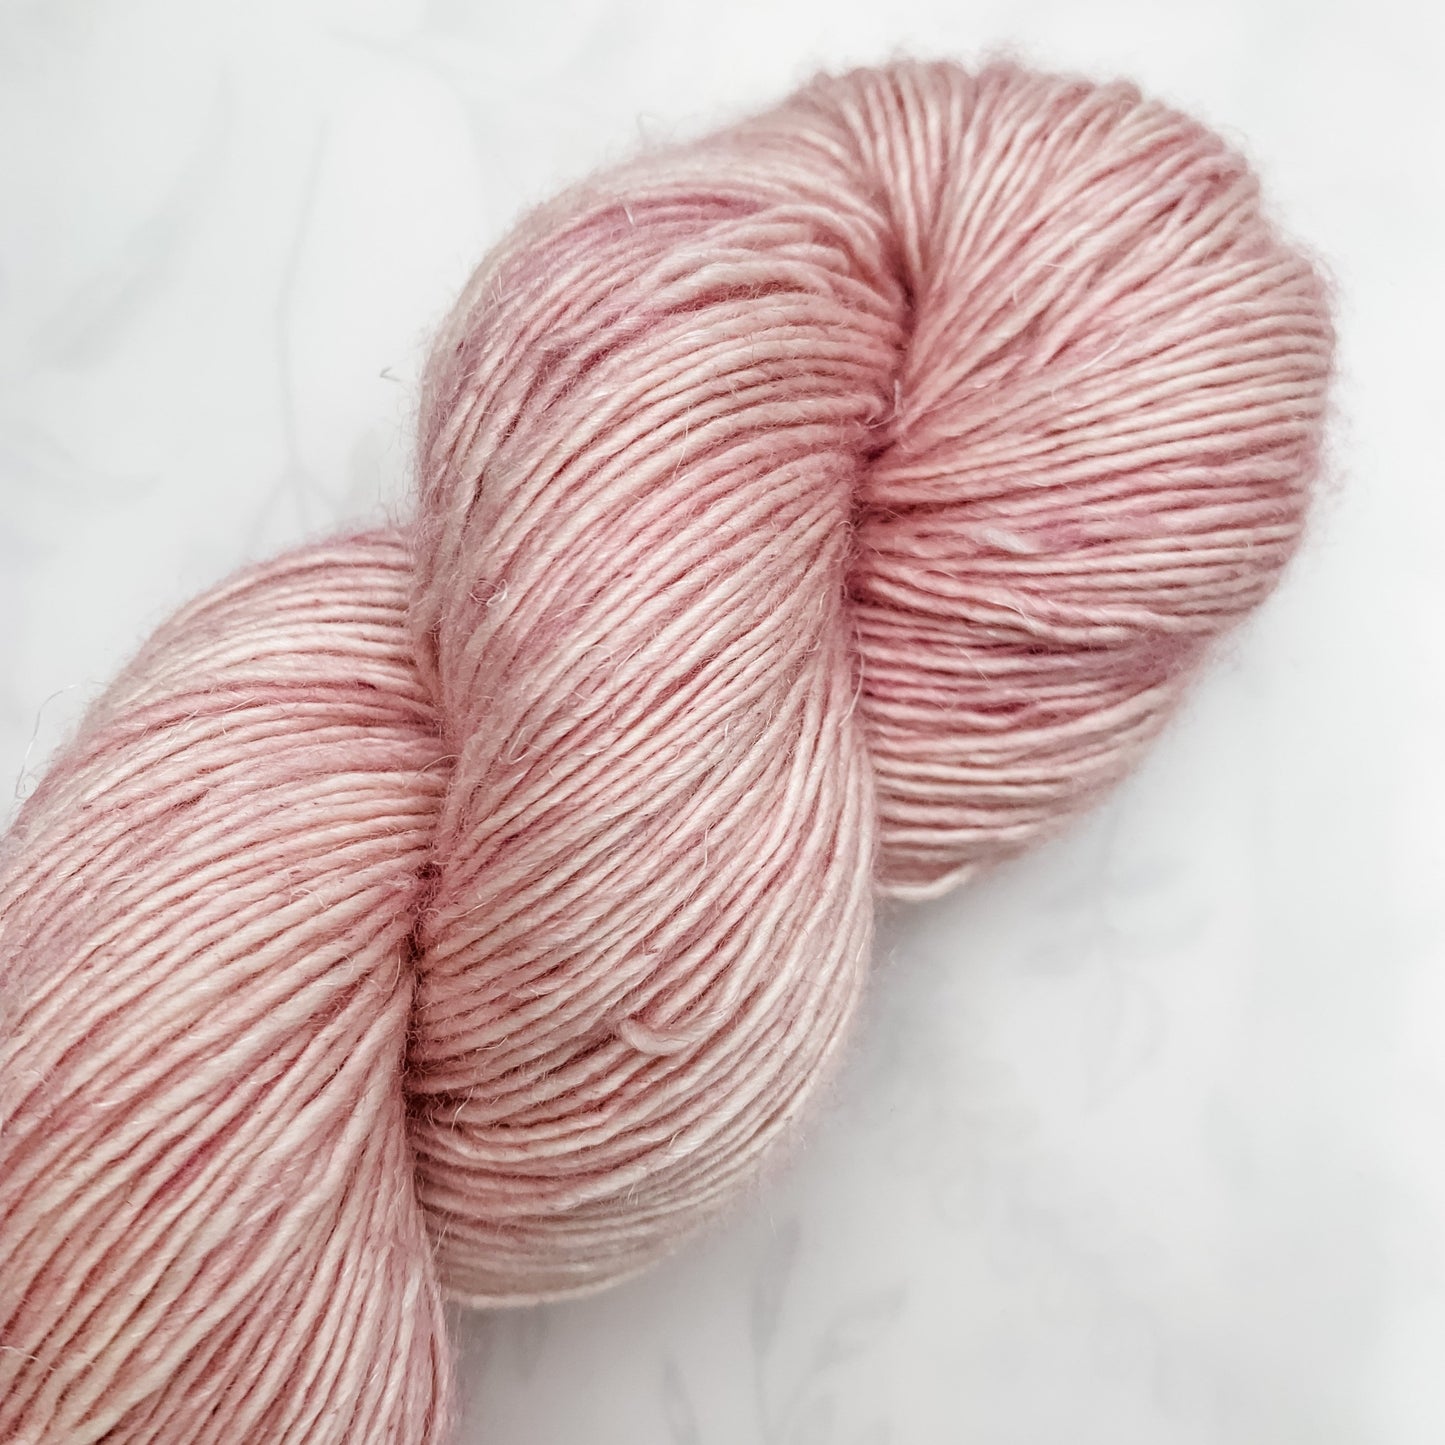 Steppe - Lysefjord Single - Tonal Yarn - Hand dyed yarn